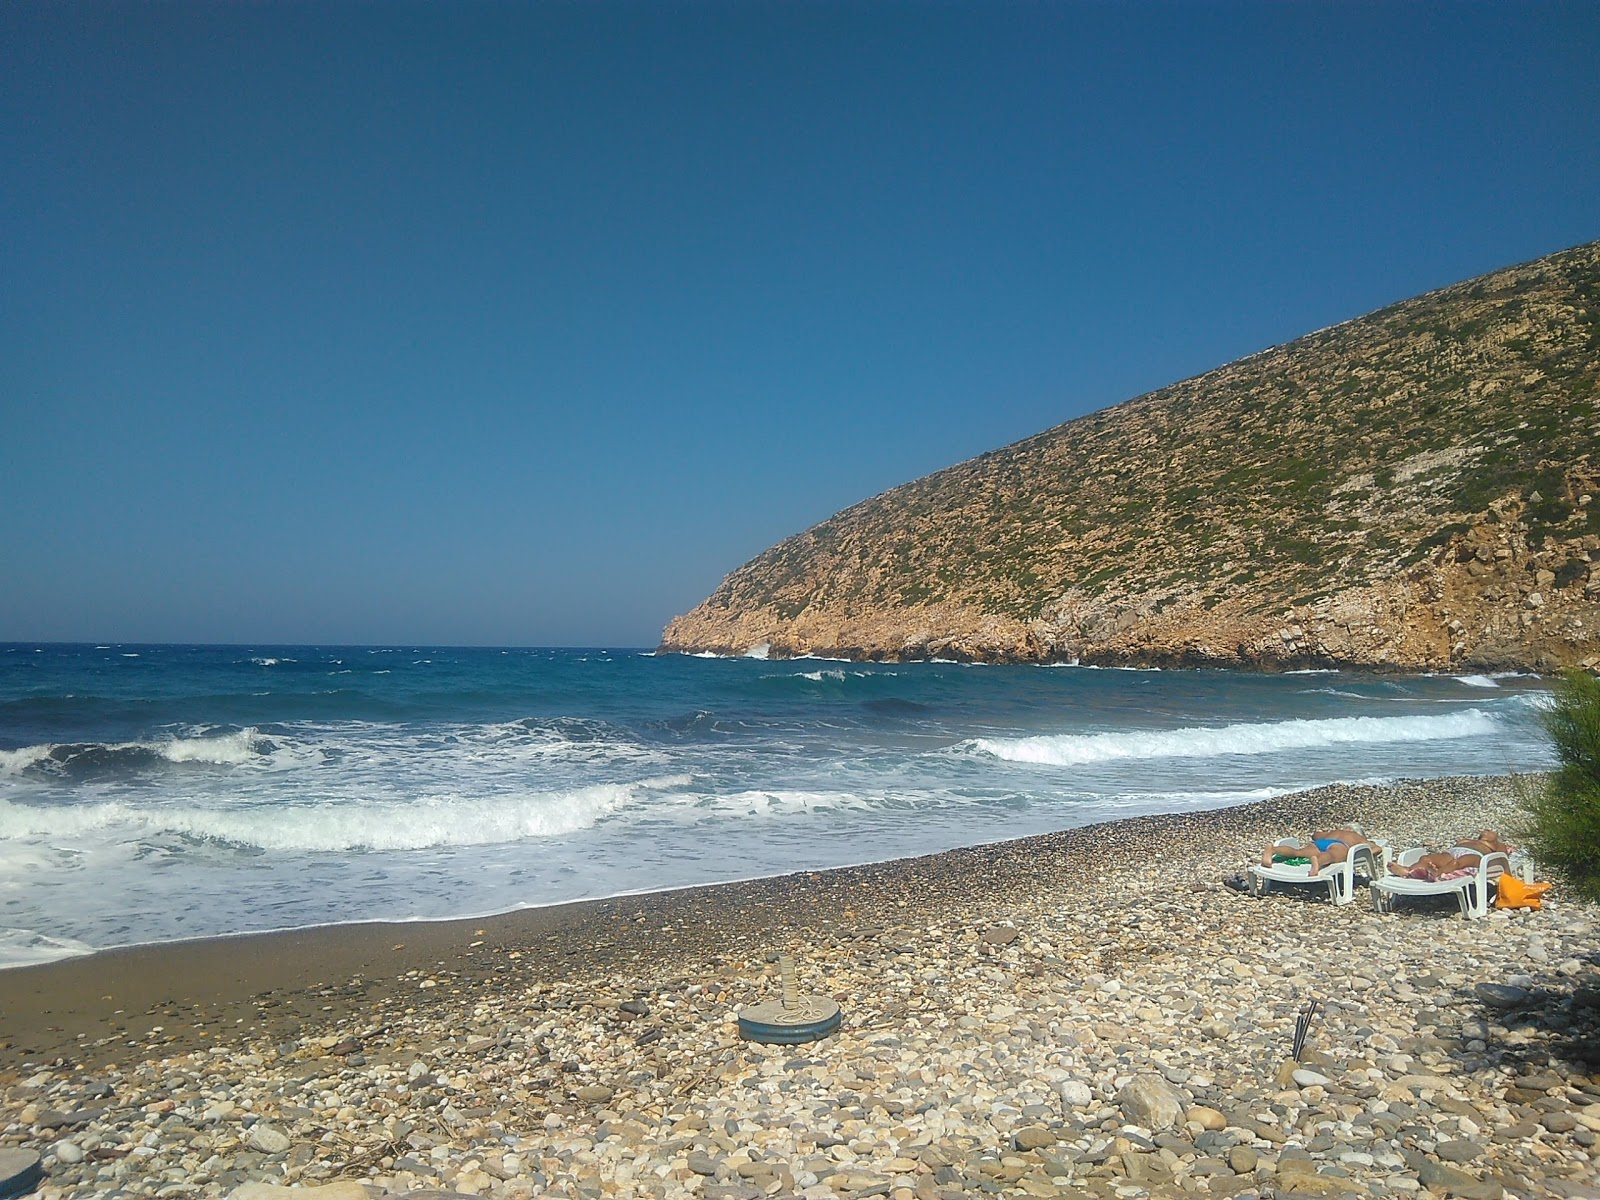 Zdjęcie Apollonas beach - popularne miejsce wśród znawców relaksu